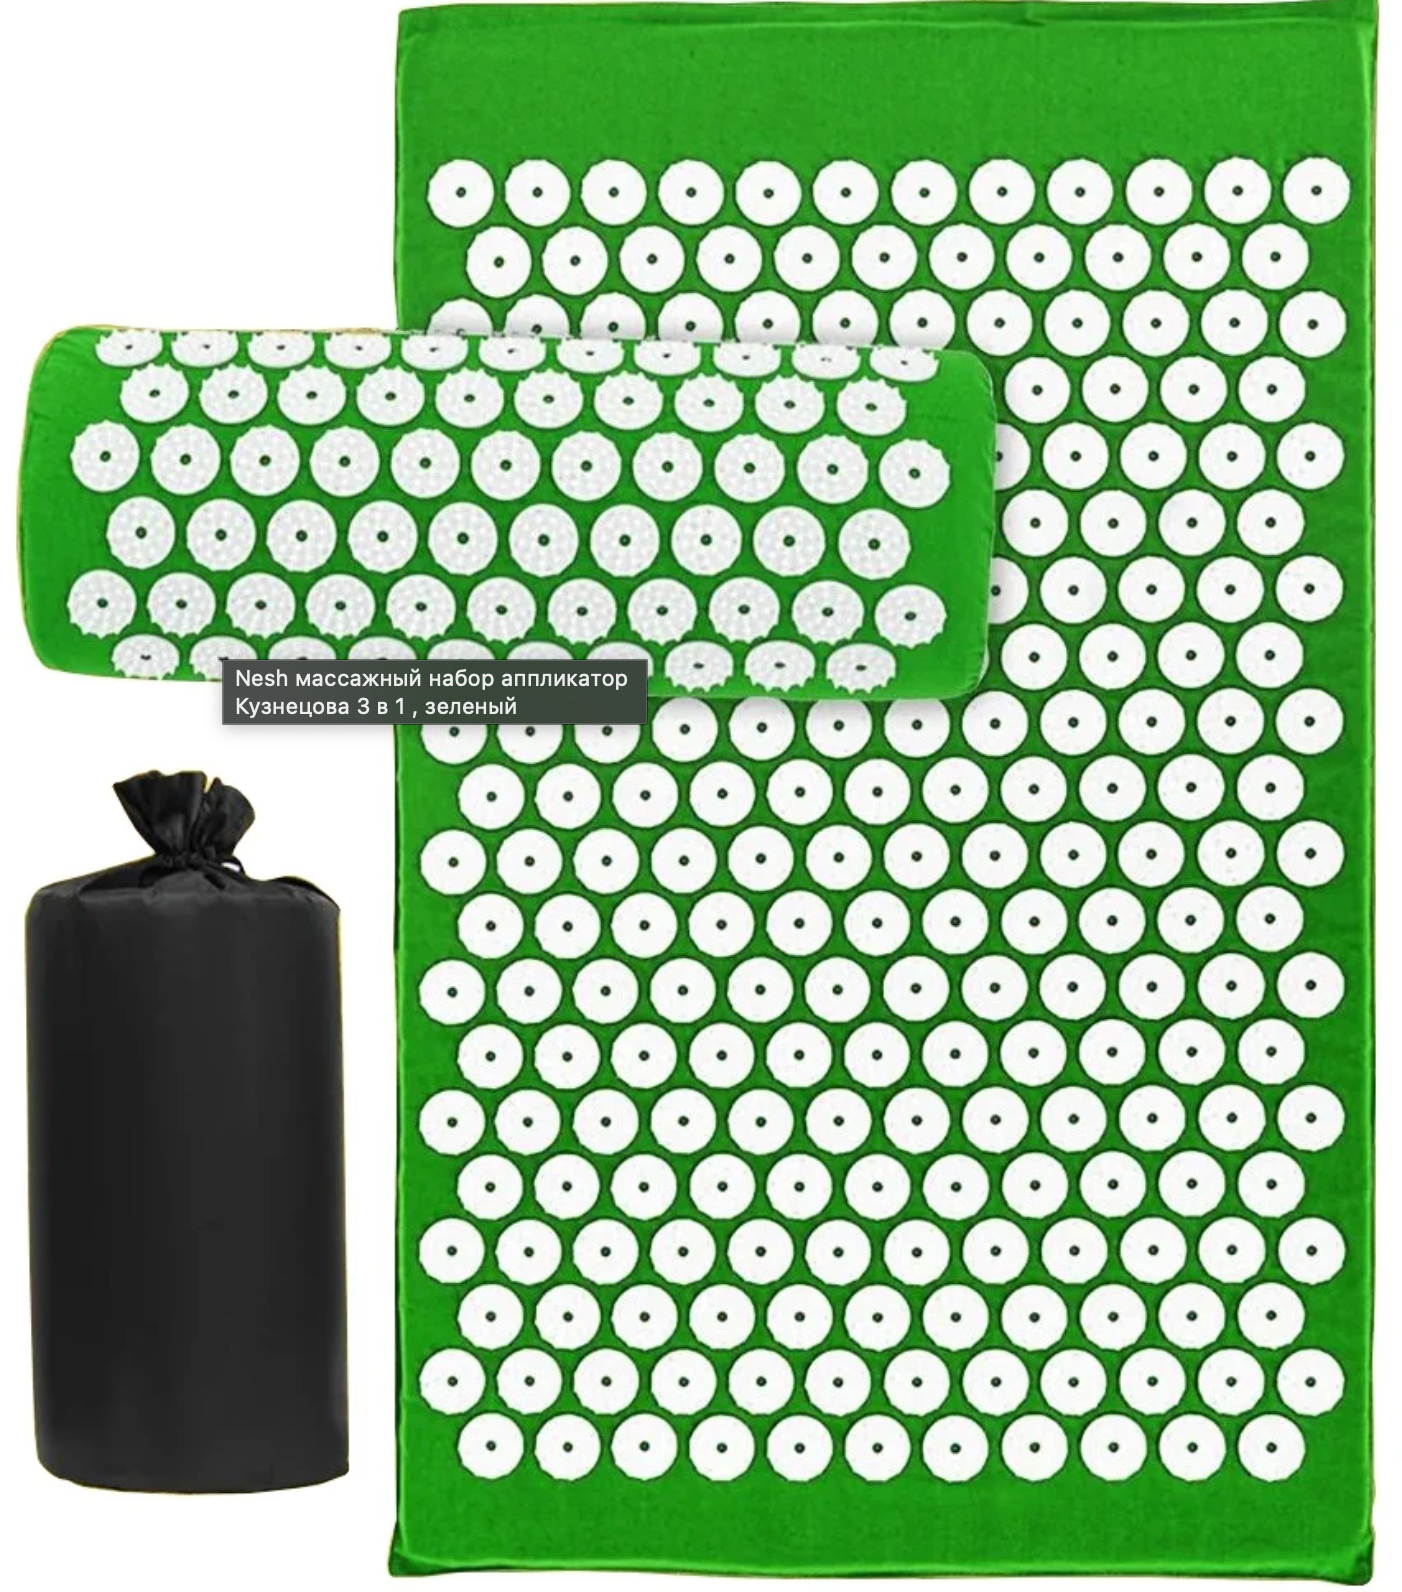 Nesh массажный набор аппликатор Кузнецова 3 в 1 , зеленый (игольчатый валик, мат, сумка)